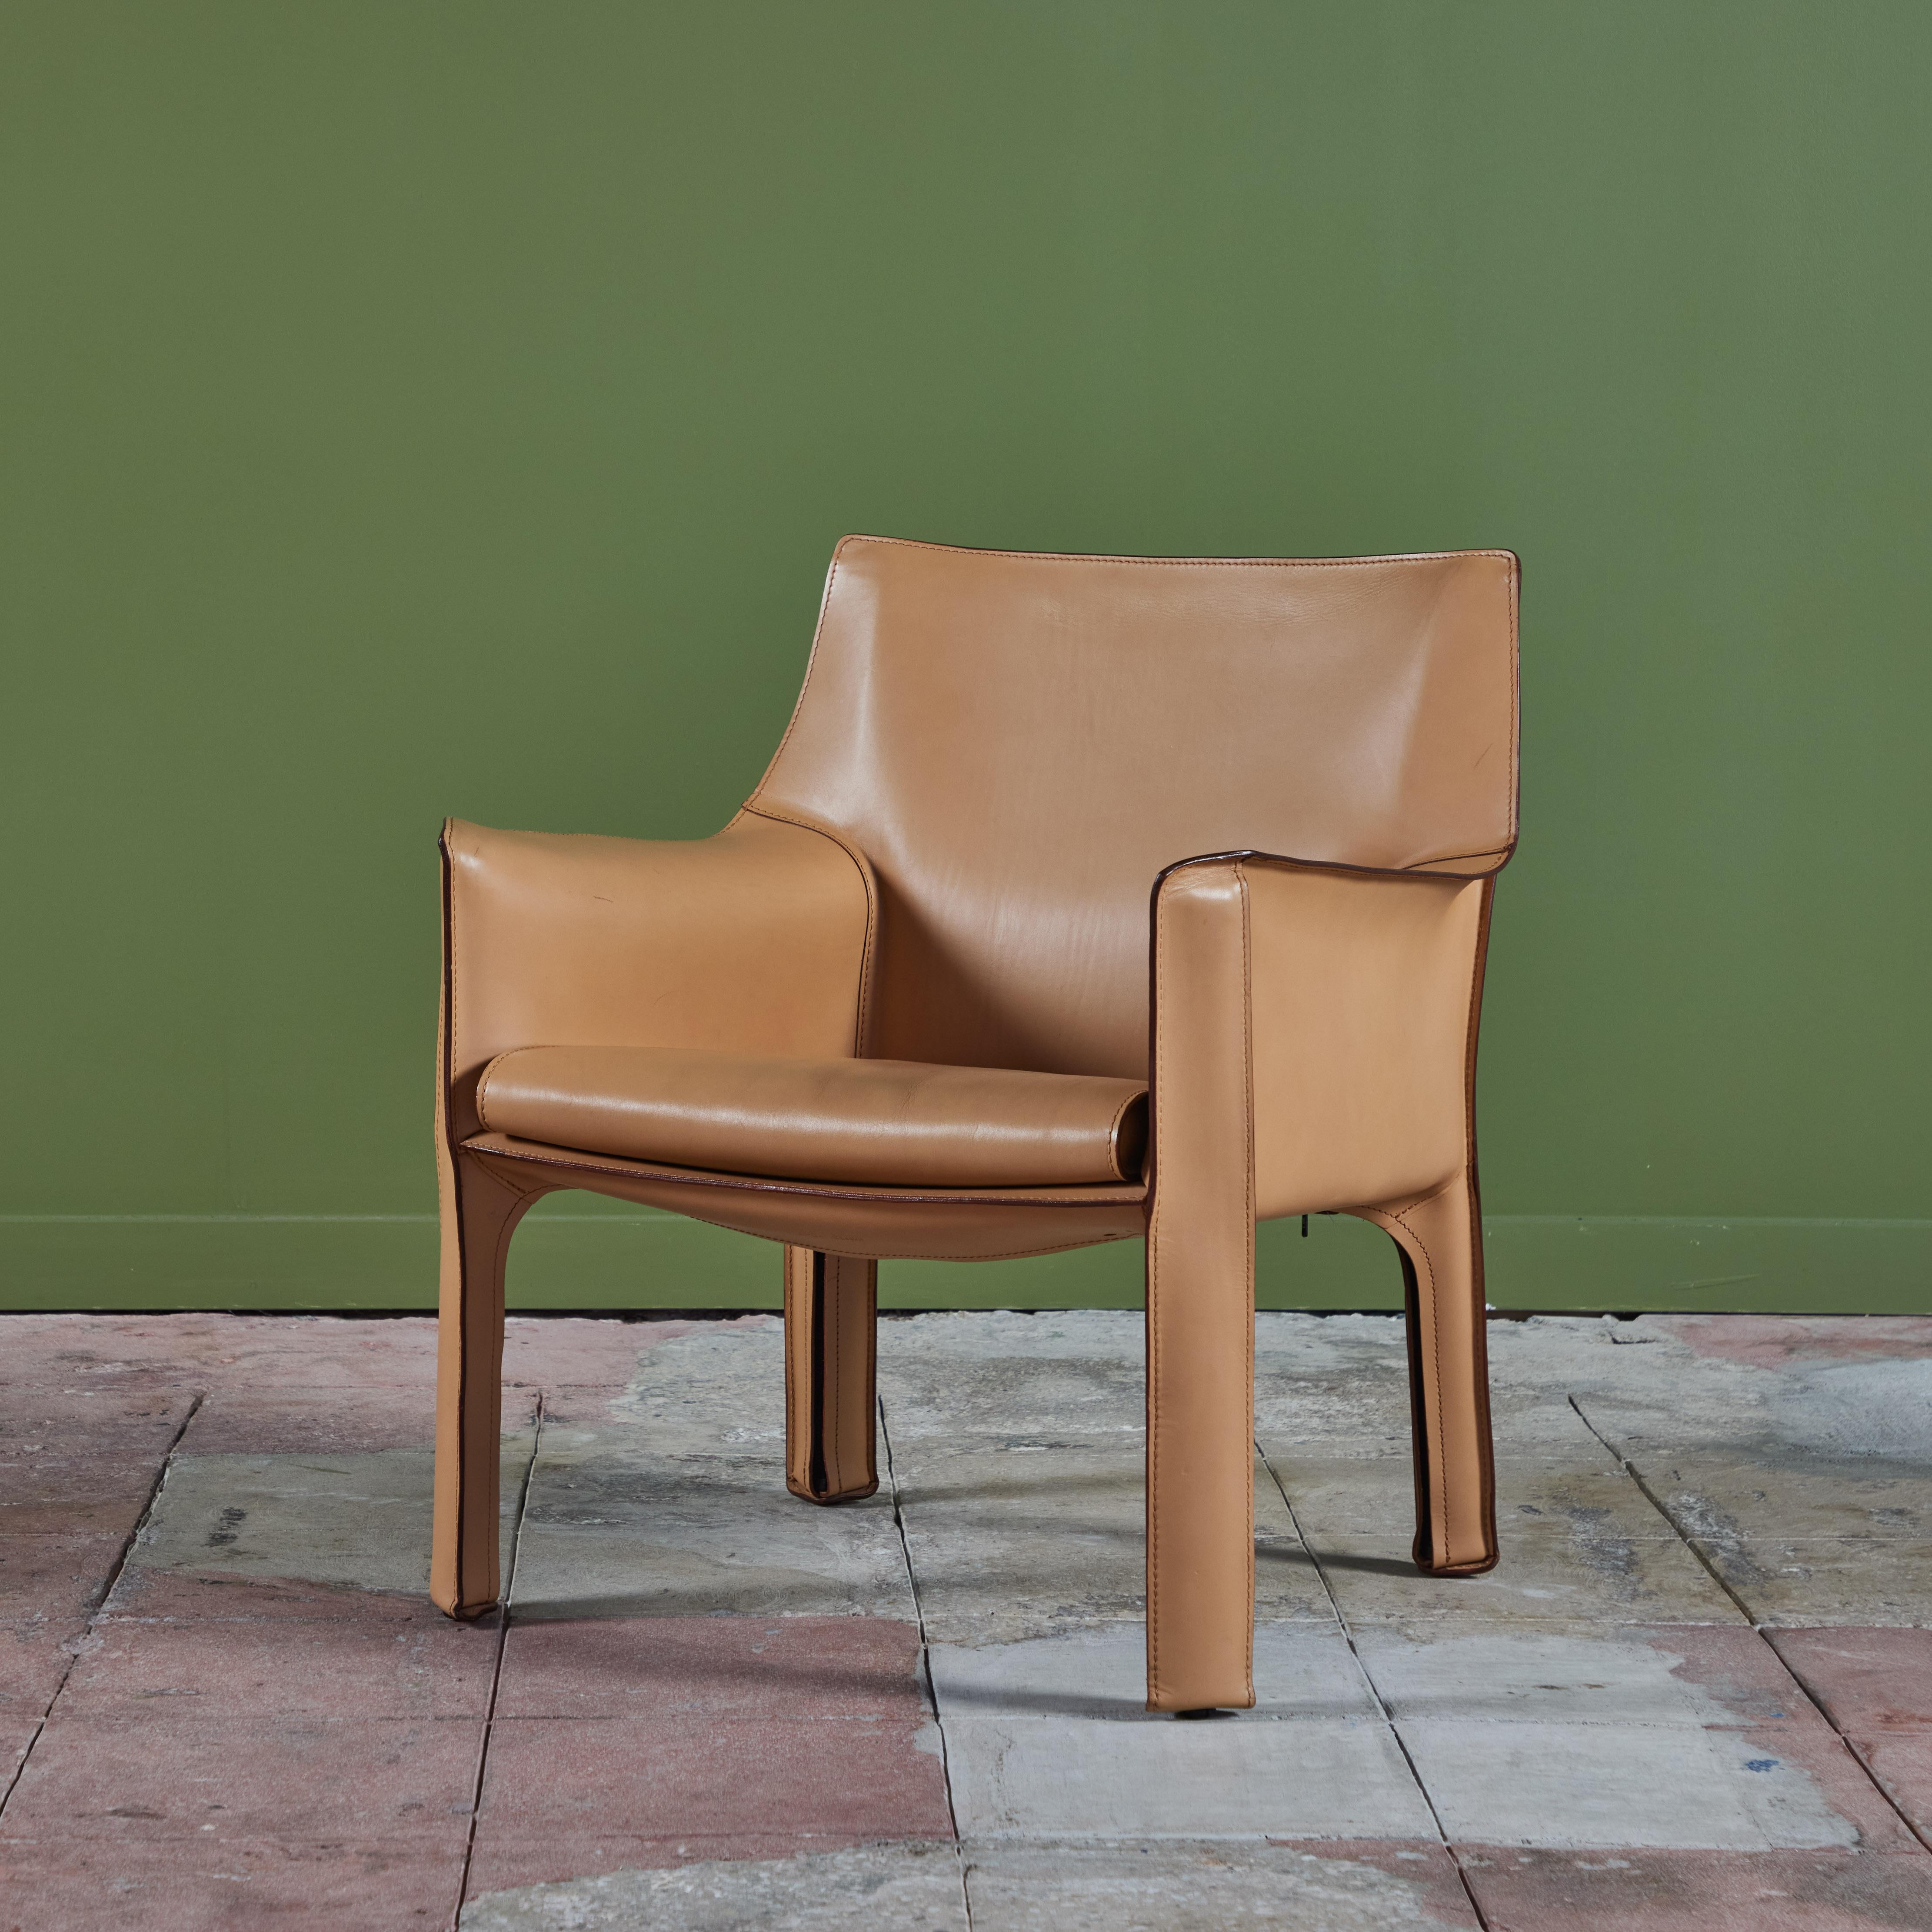 Cette chaise emblématique conçue par Mario Bellini pour Cassina dans les années 1970, en Italie, présente le cuir de selle d'origine, de couleur naturelle, enveloppé d'une structure en acier. Le siège est doté d'un coussin d'assise arrondi en cuir